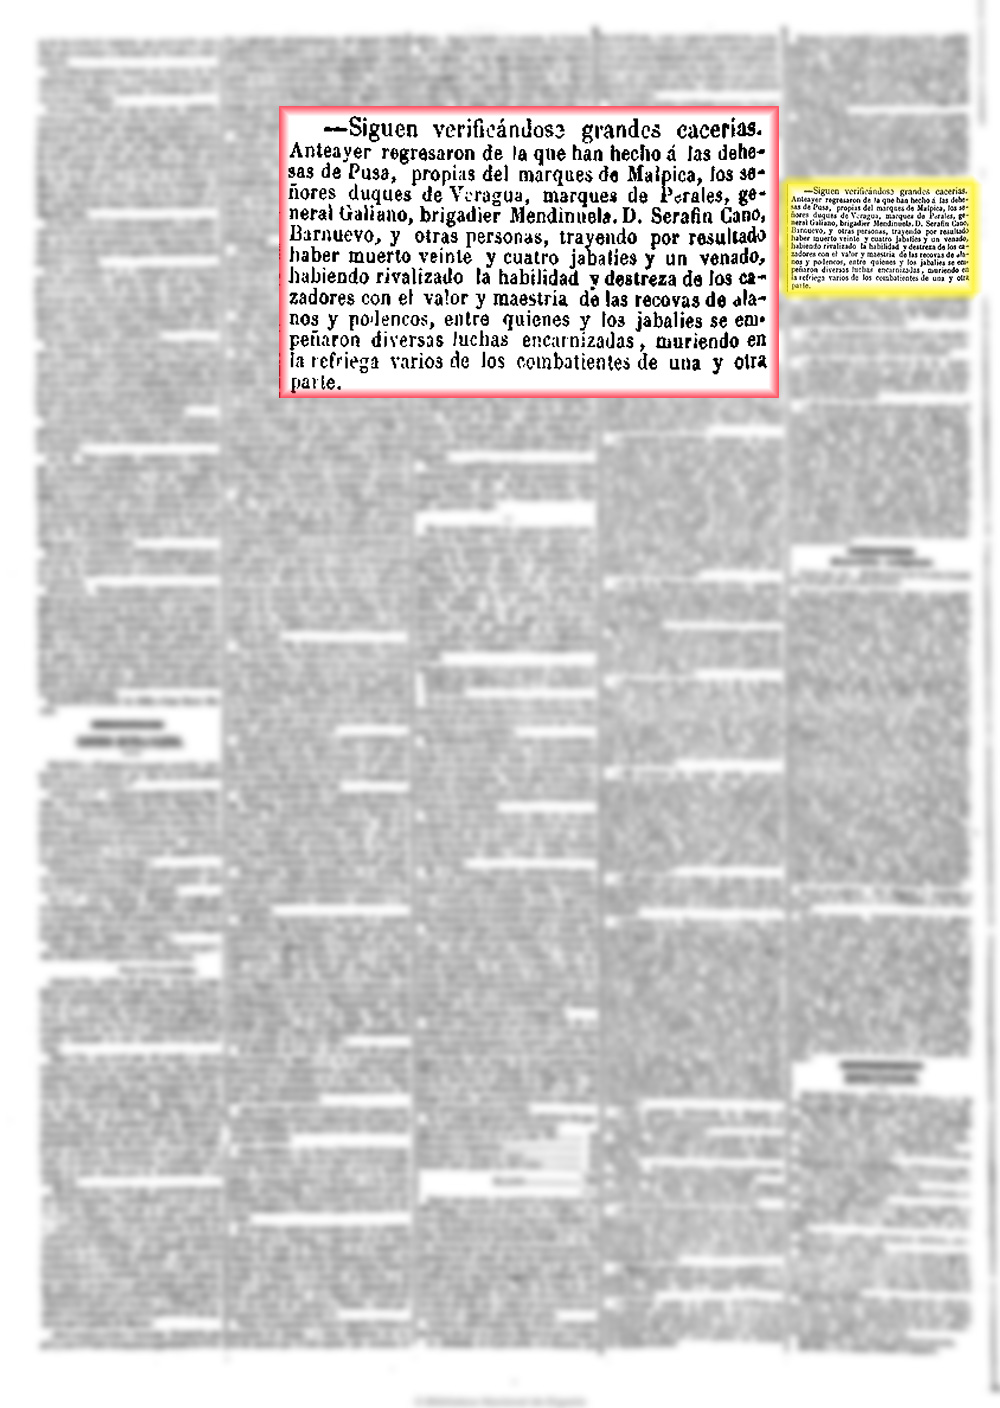 El Heraldo 14/11/1852. Caceria de caza mayor en Valdepusa 